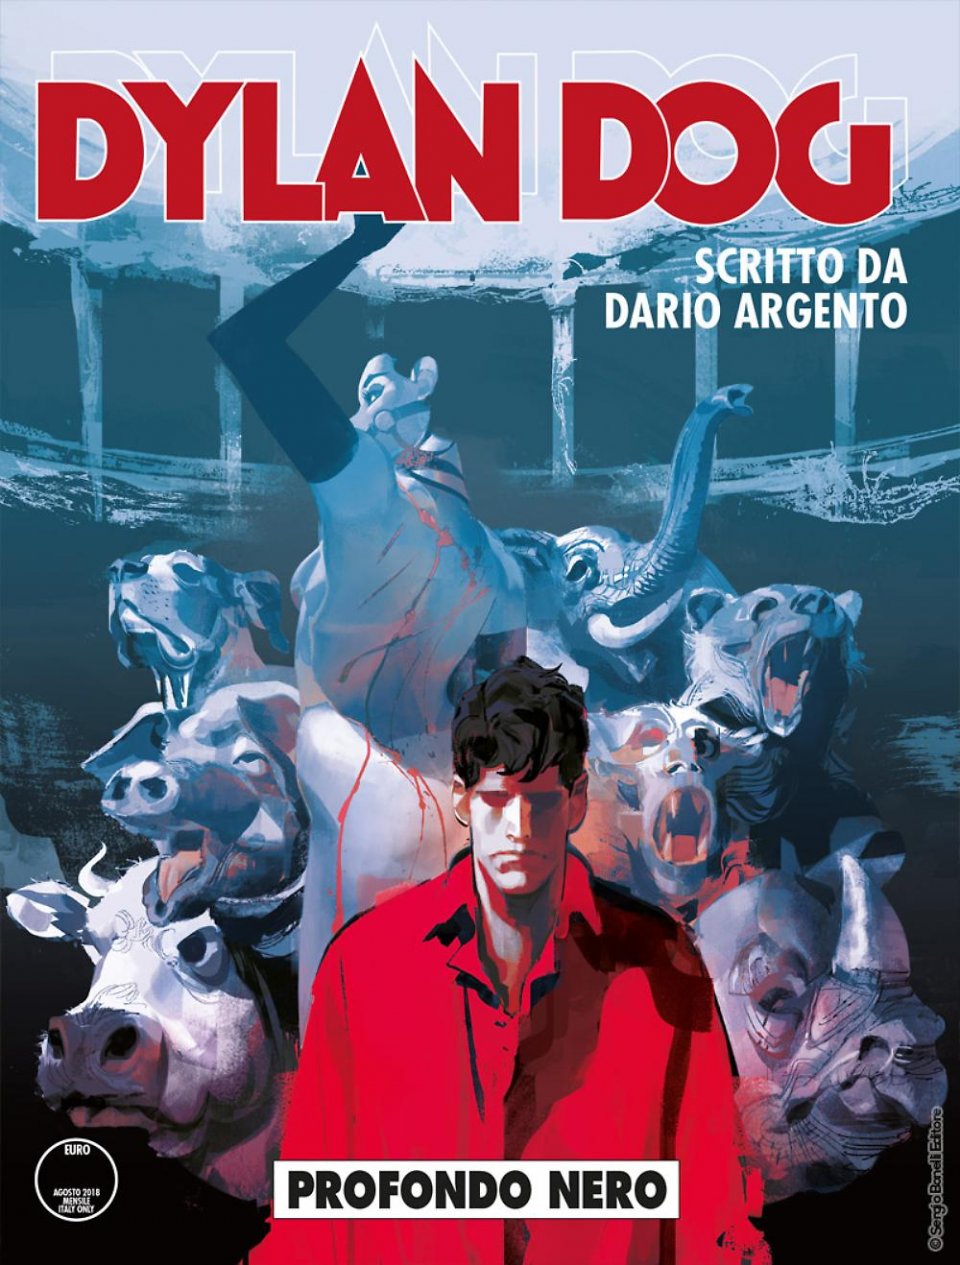 Dylan Dog - 'Profondo Nero', l'albo firmato da Dario Argento